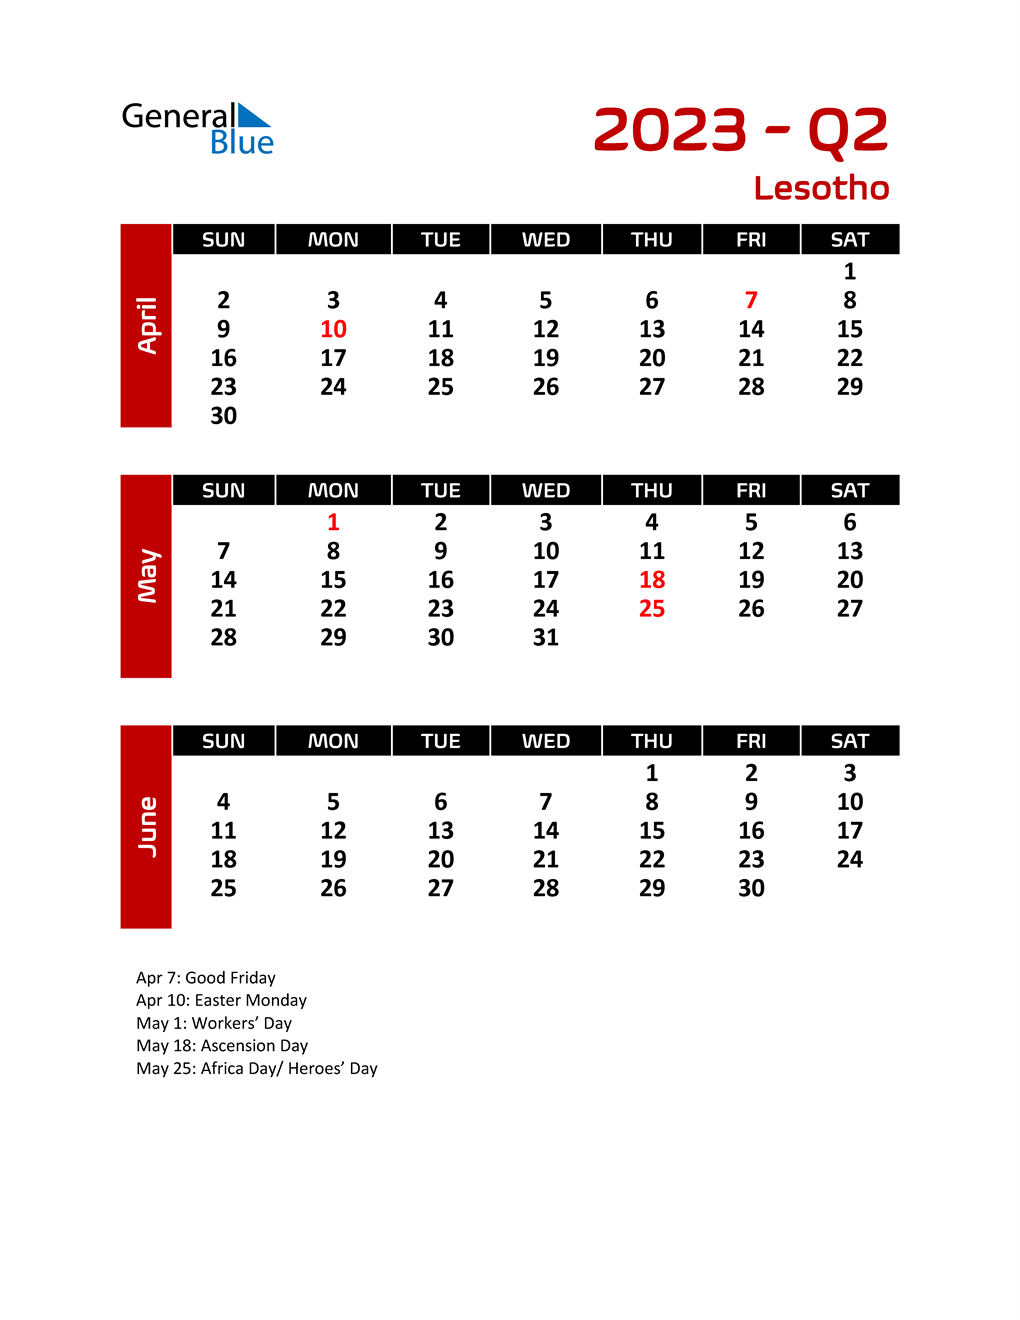 Q2 2023 Quarterly Calendar with Lesotho Holidays